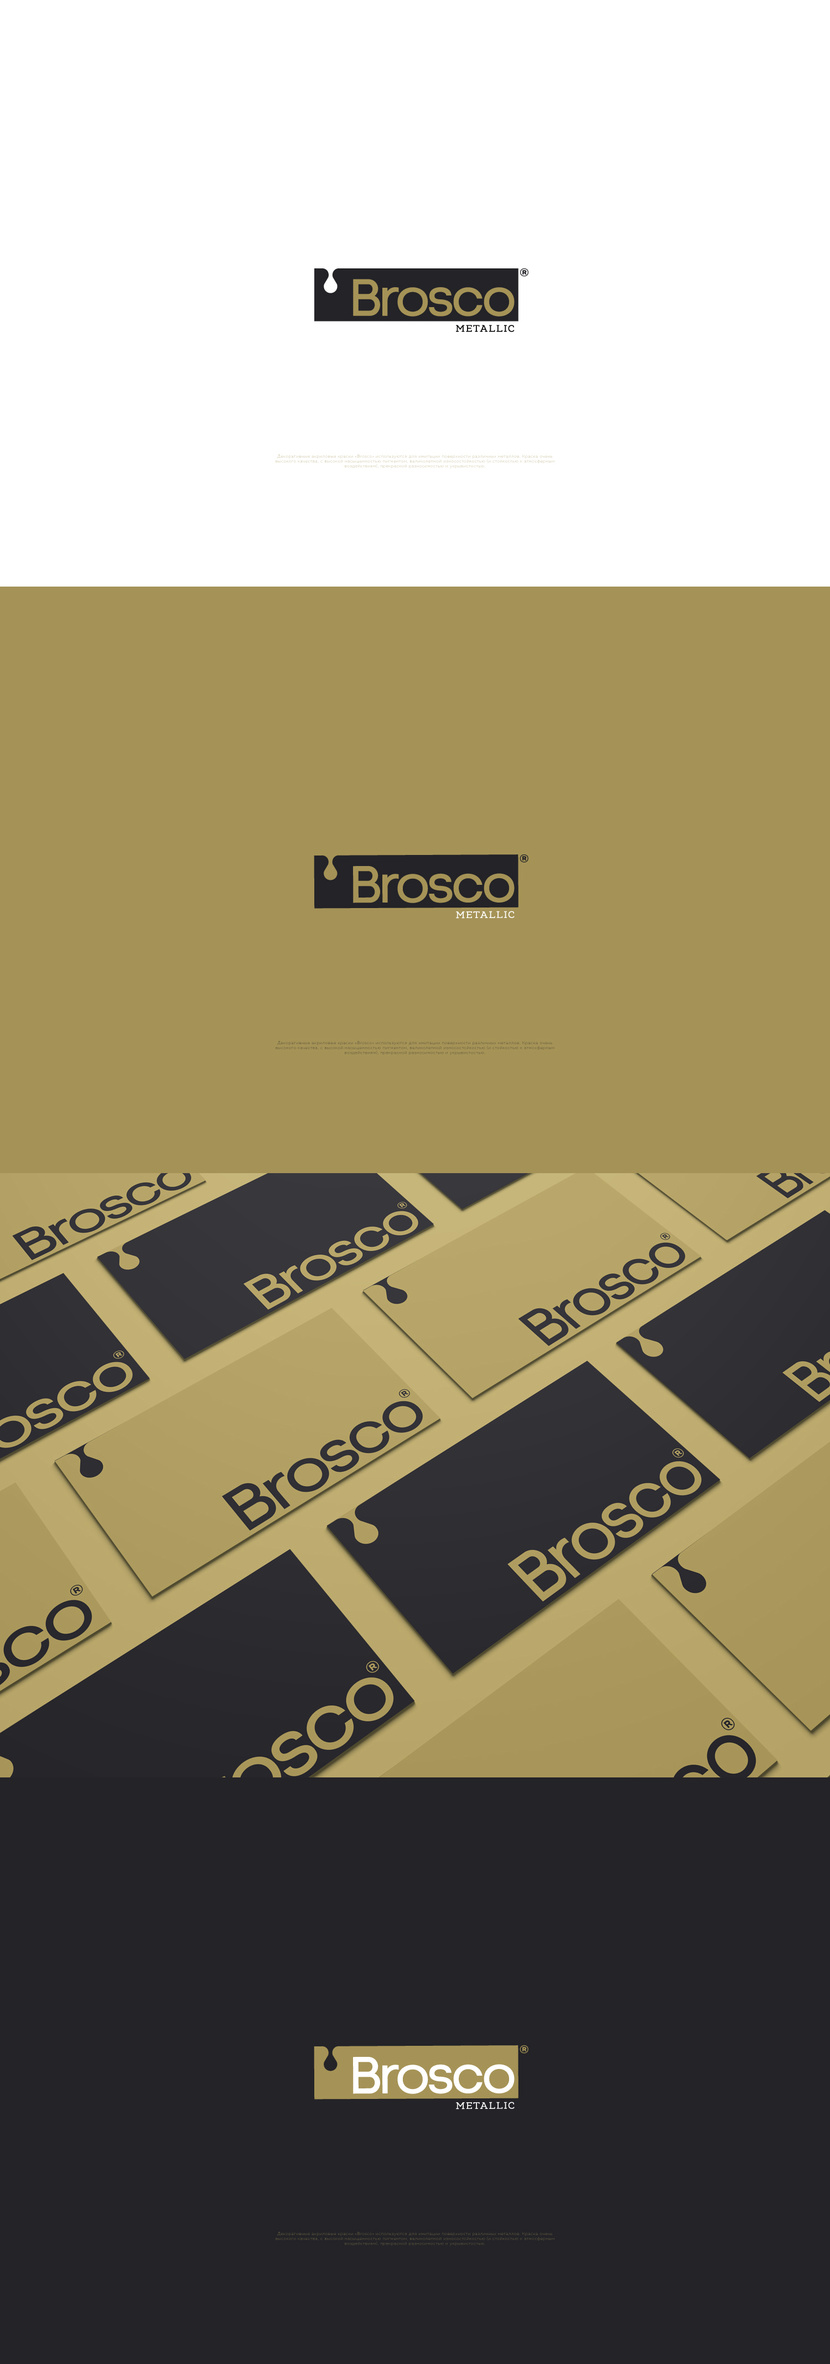 Доброго дня) Разработка логотипа и фирменного стиля производителя акриловой краски для дизайнеров Brosco